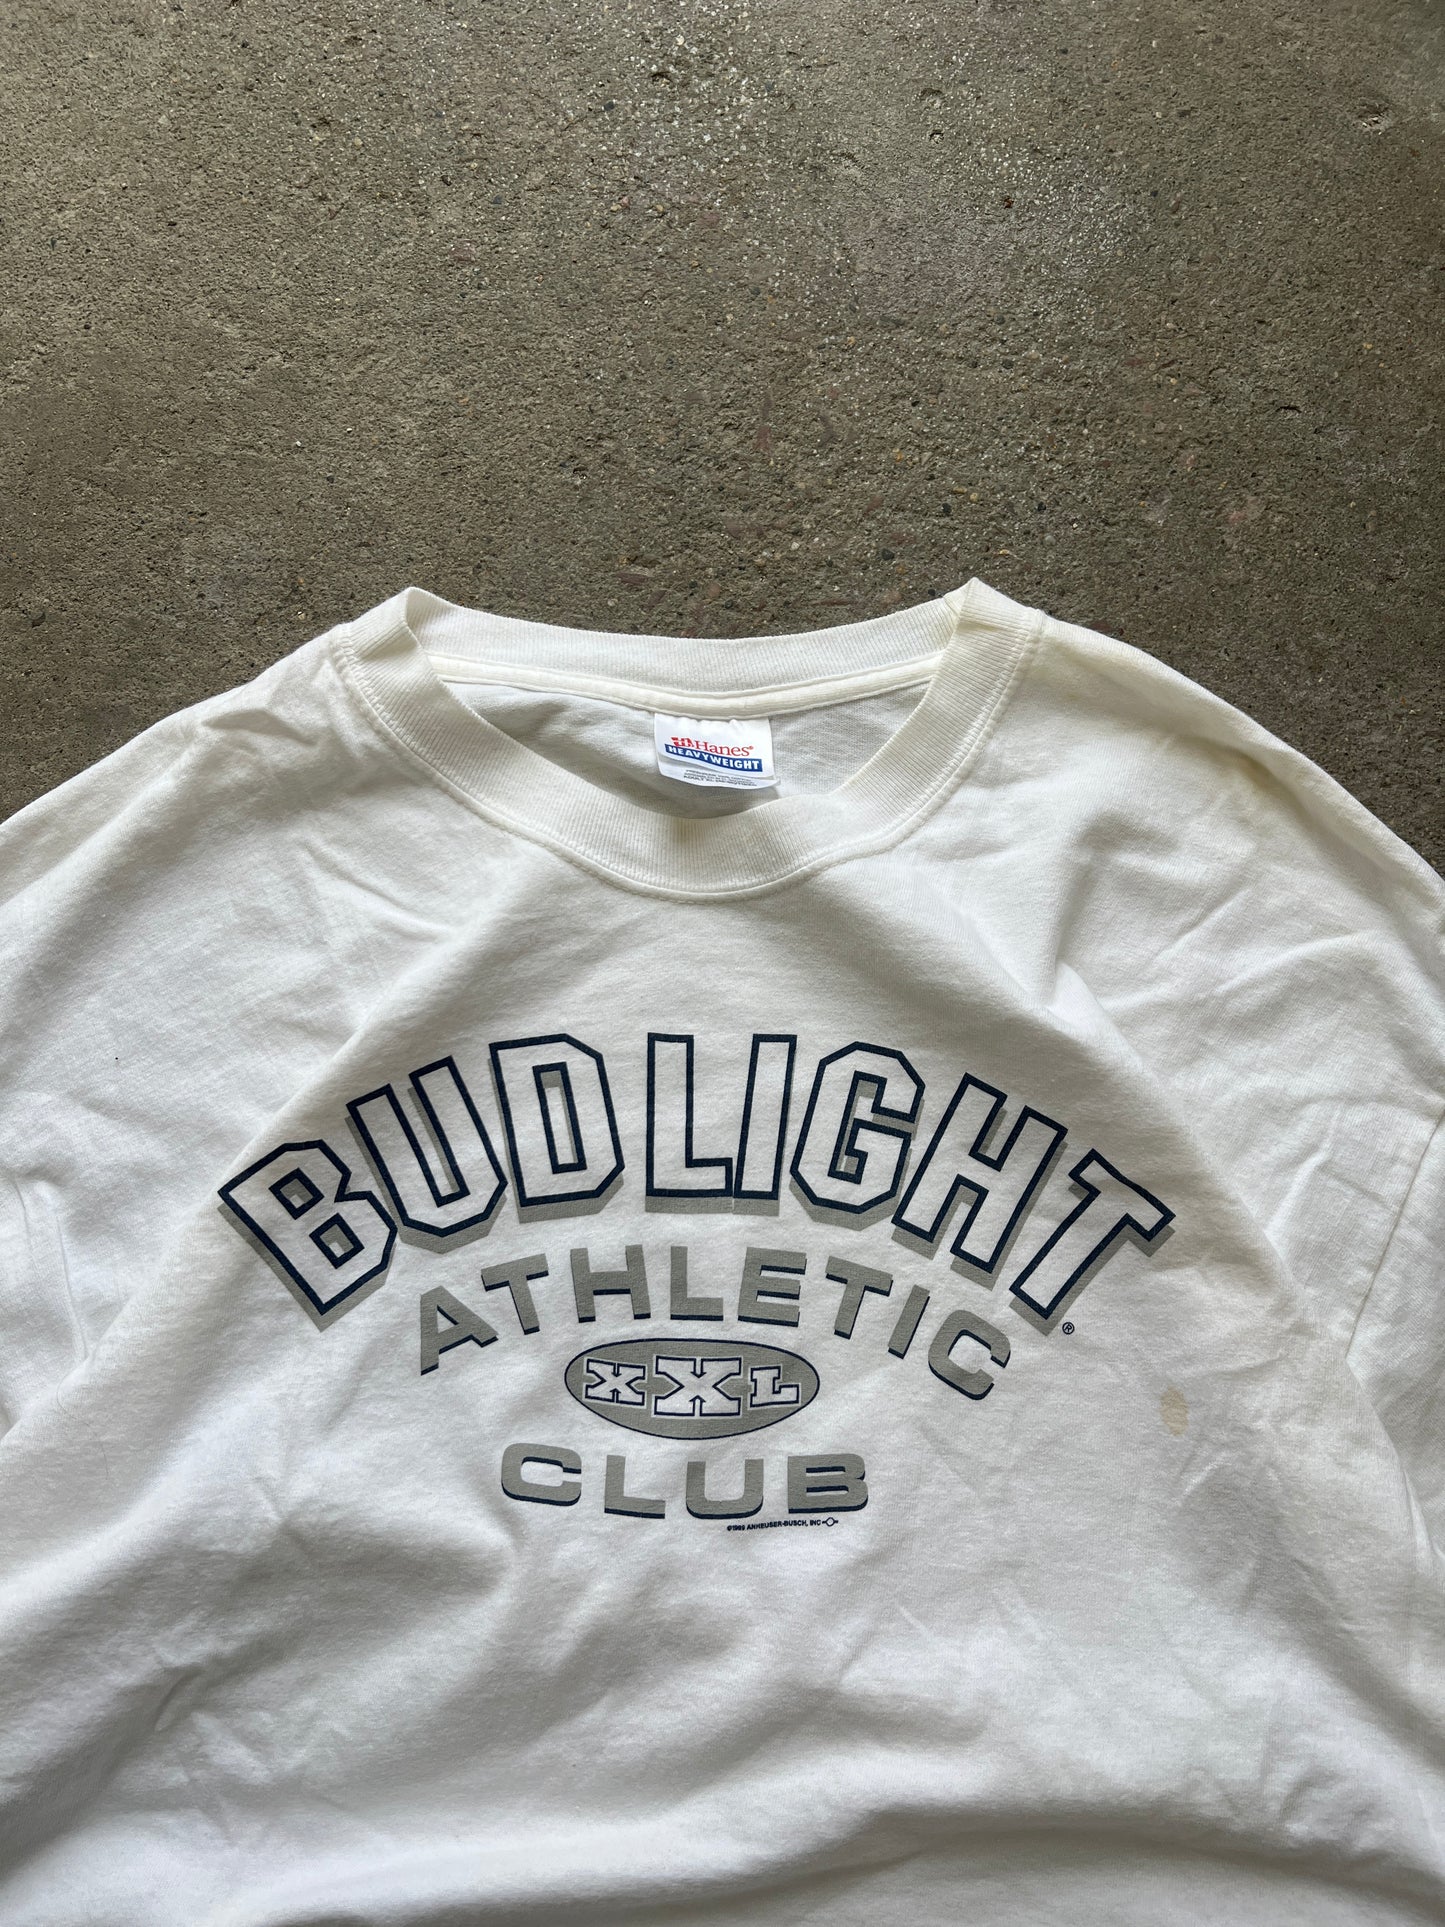 Vintage Bud Light Club Shirt - XL